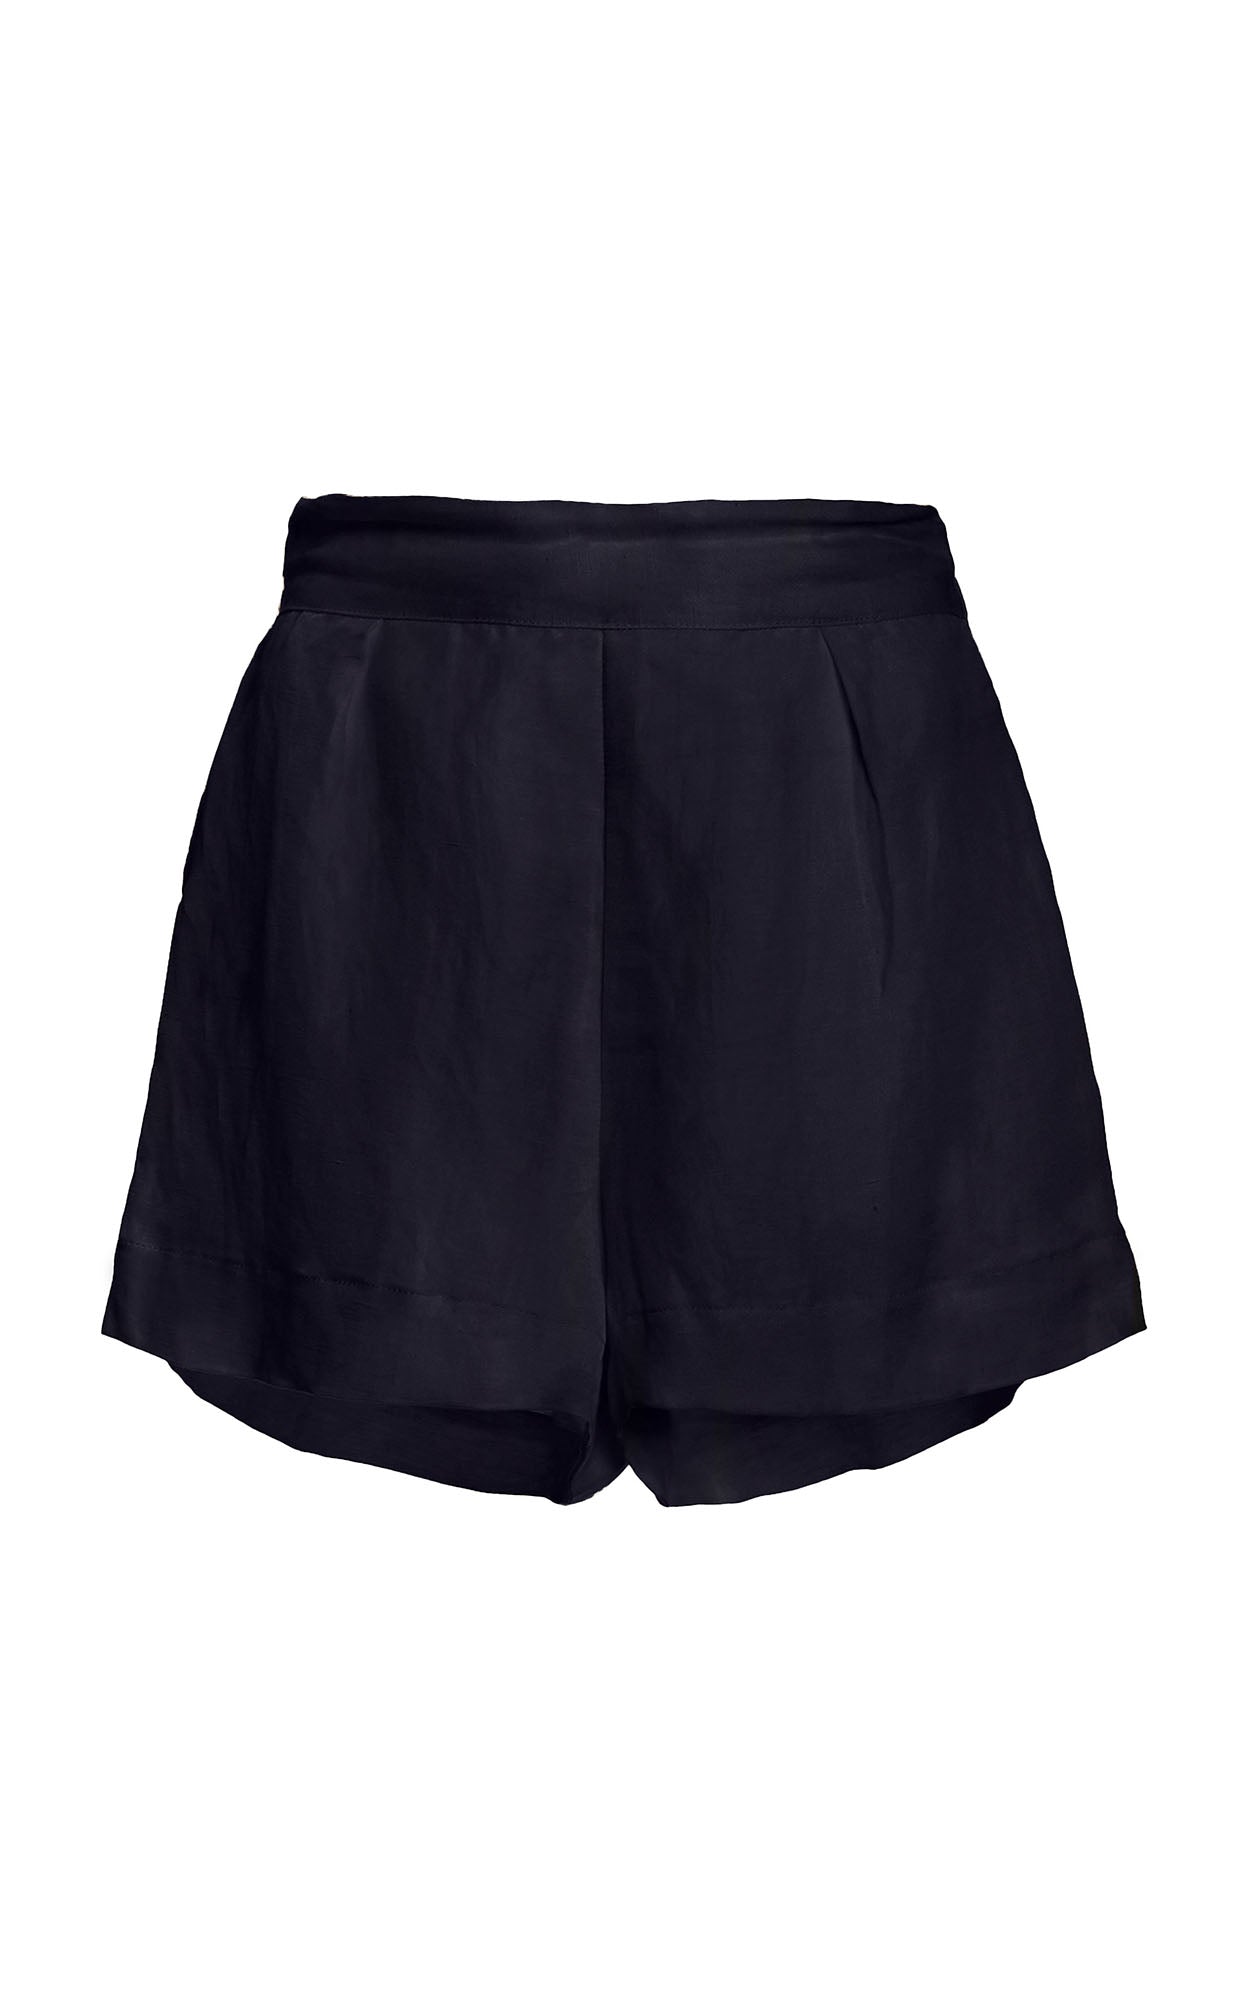 The High-Waist Short Short in Linen Cupro – Anemos